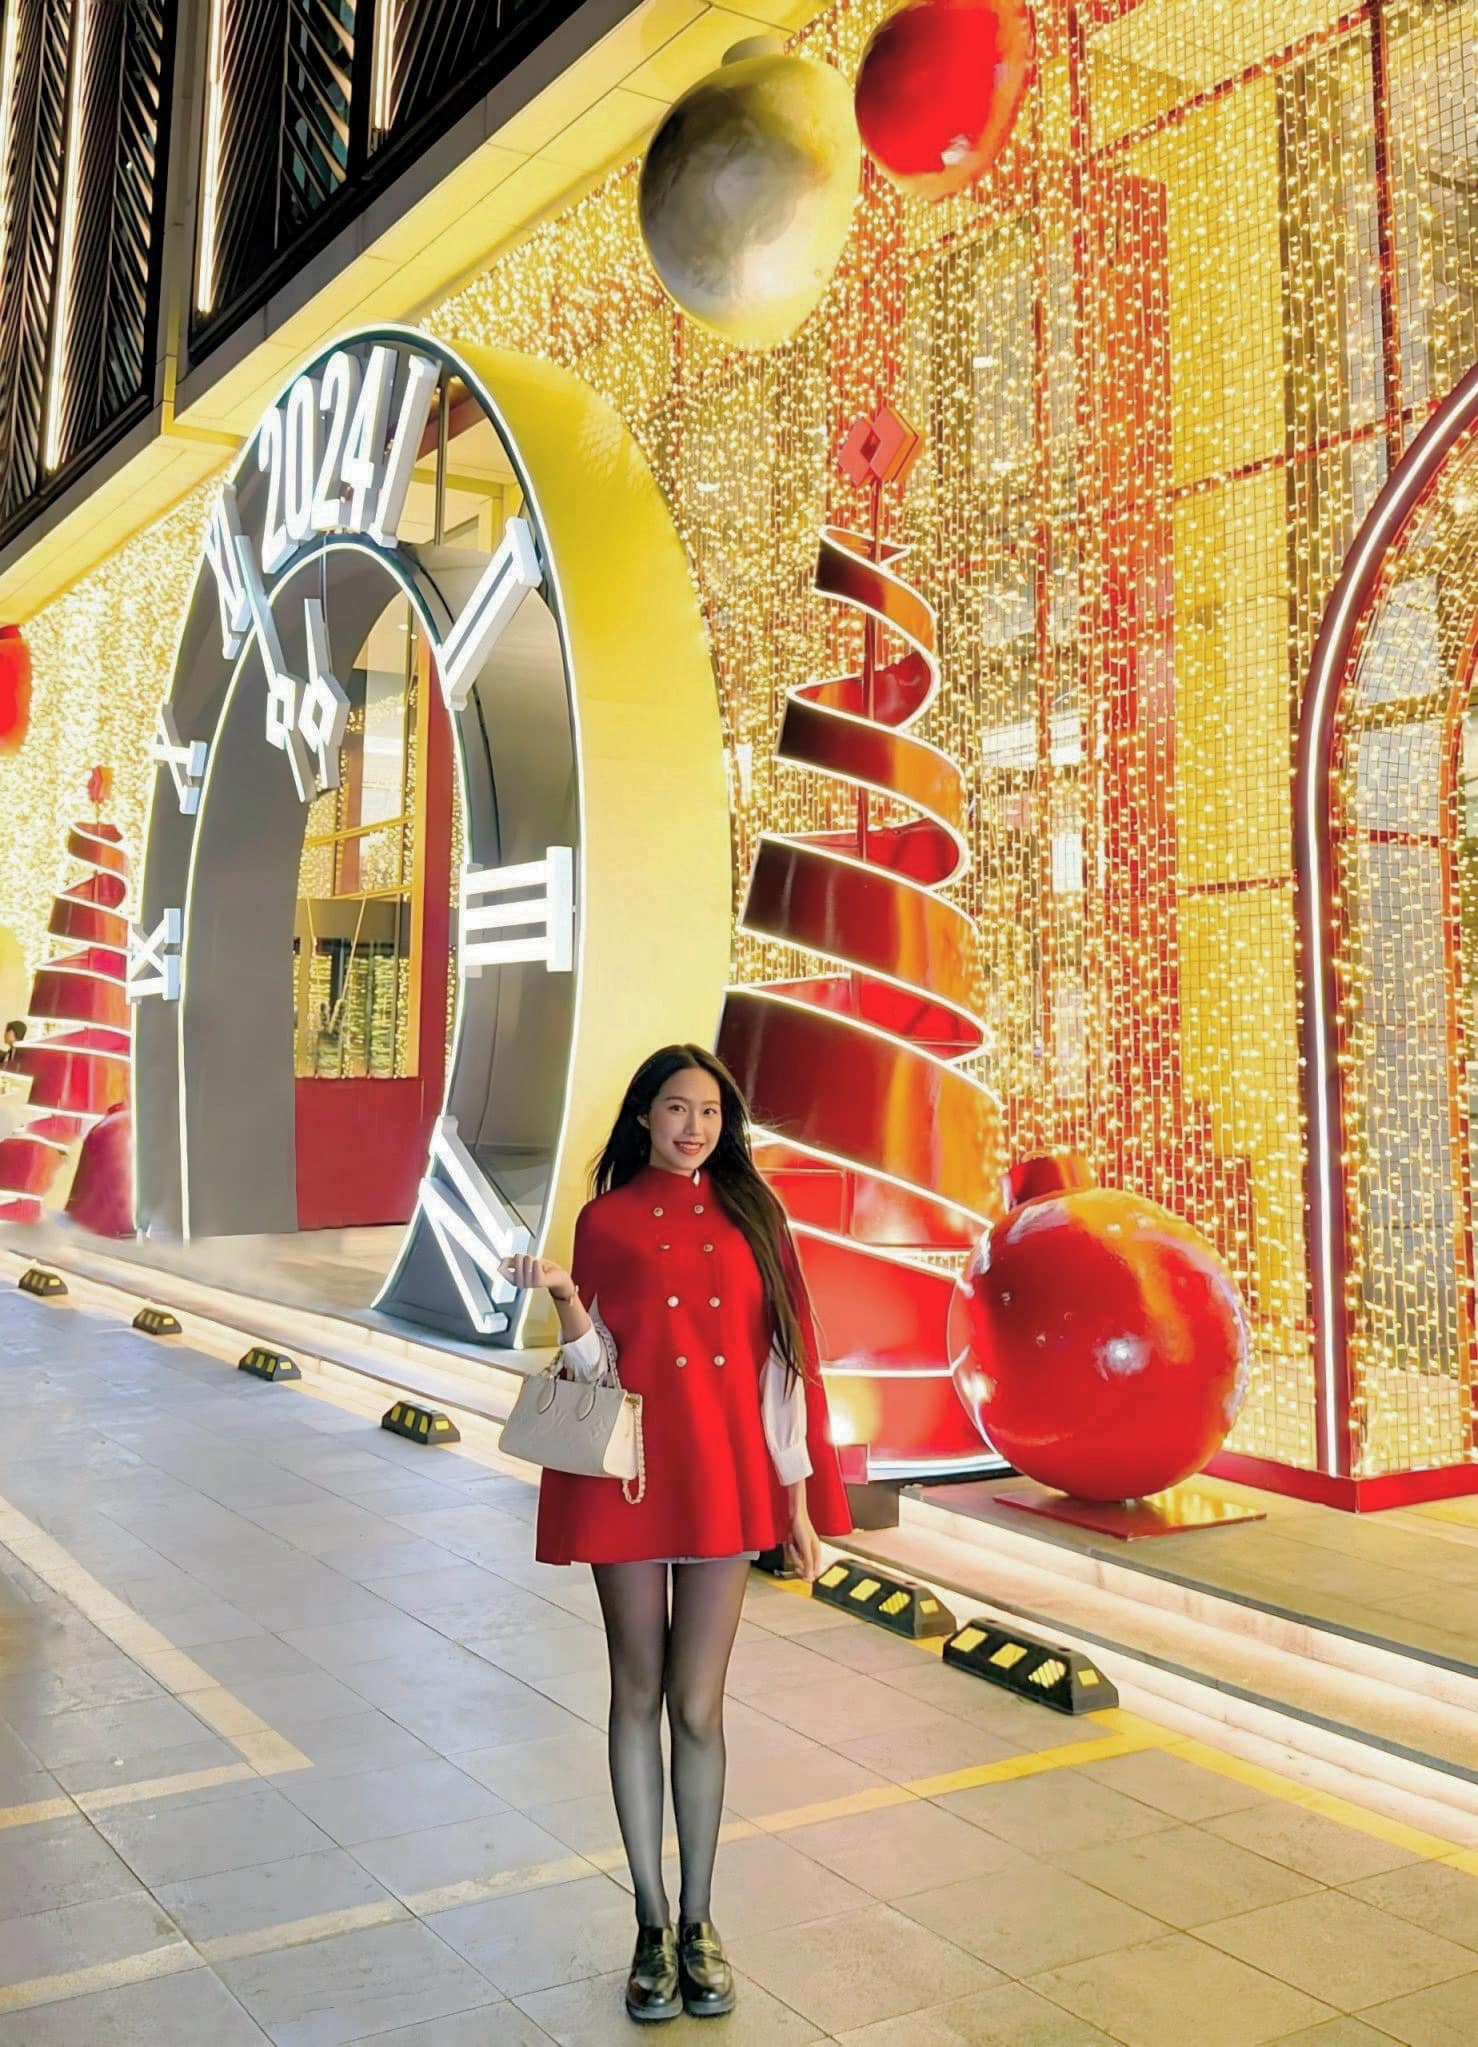 Người đẹp rất ưa chuộng những mẫu túi của nhà mốt Louis Vuitton. Dạo phố đón Giáng sinh, bà xã Đoàn Văn Hậu diện thiết kế&nbsp;OnTheGo East West gần 80 triệu đồng.